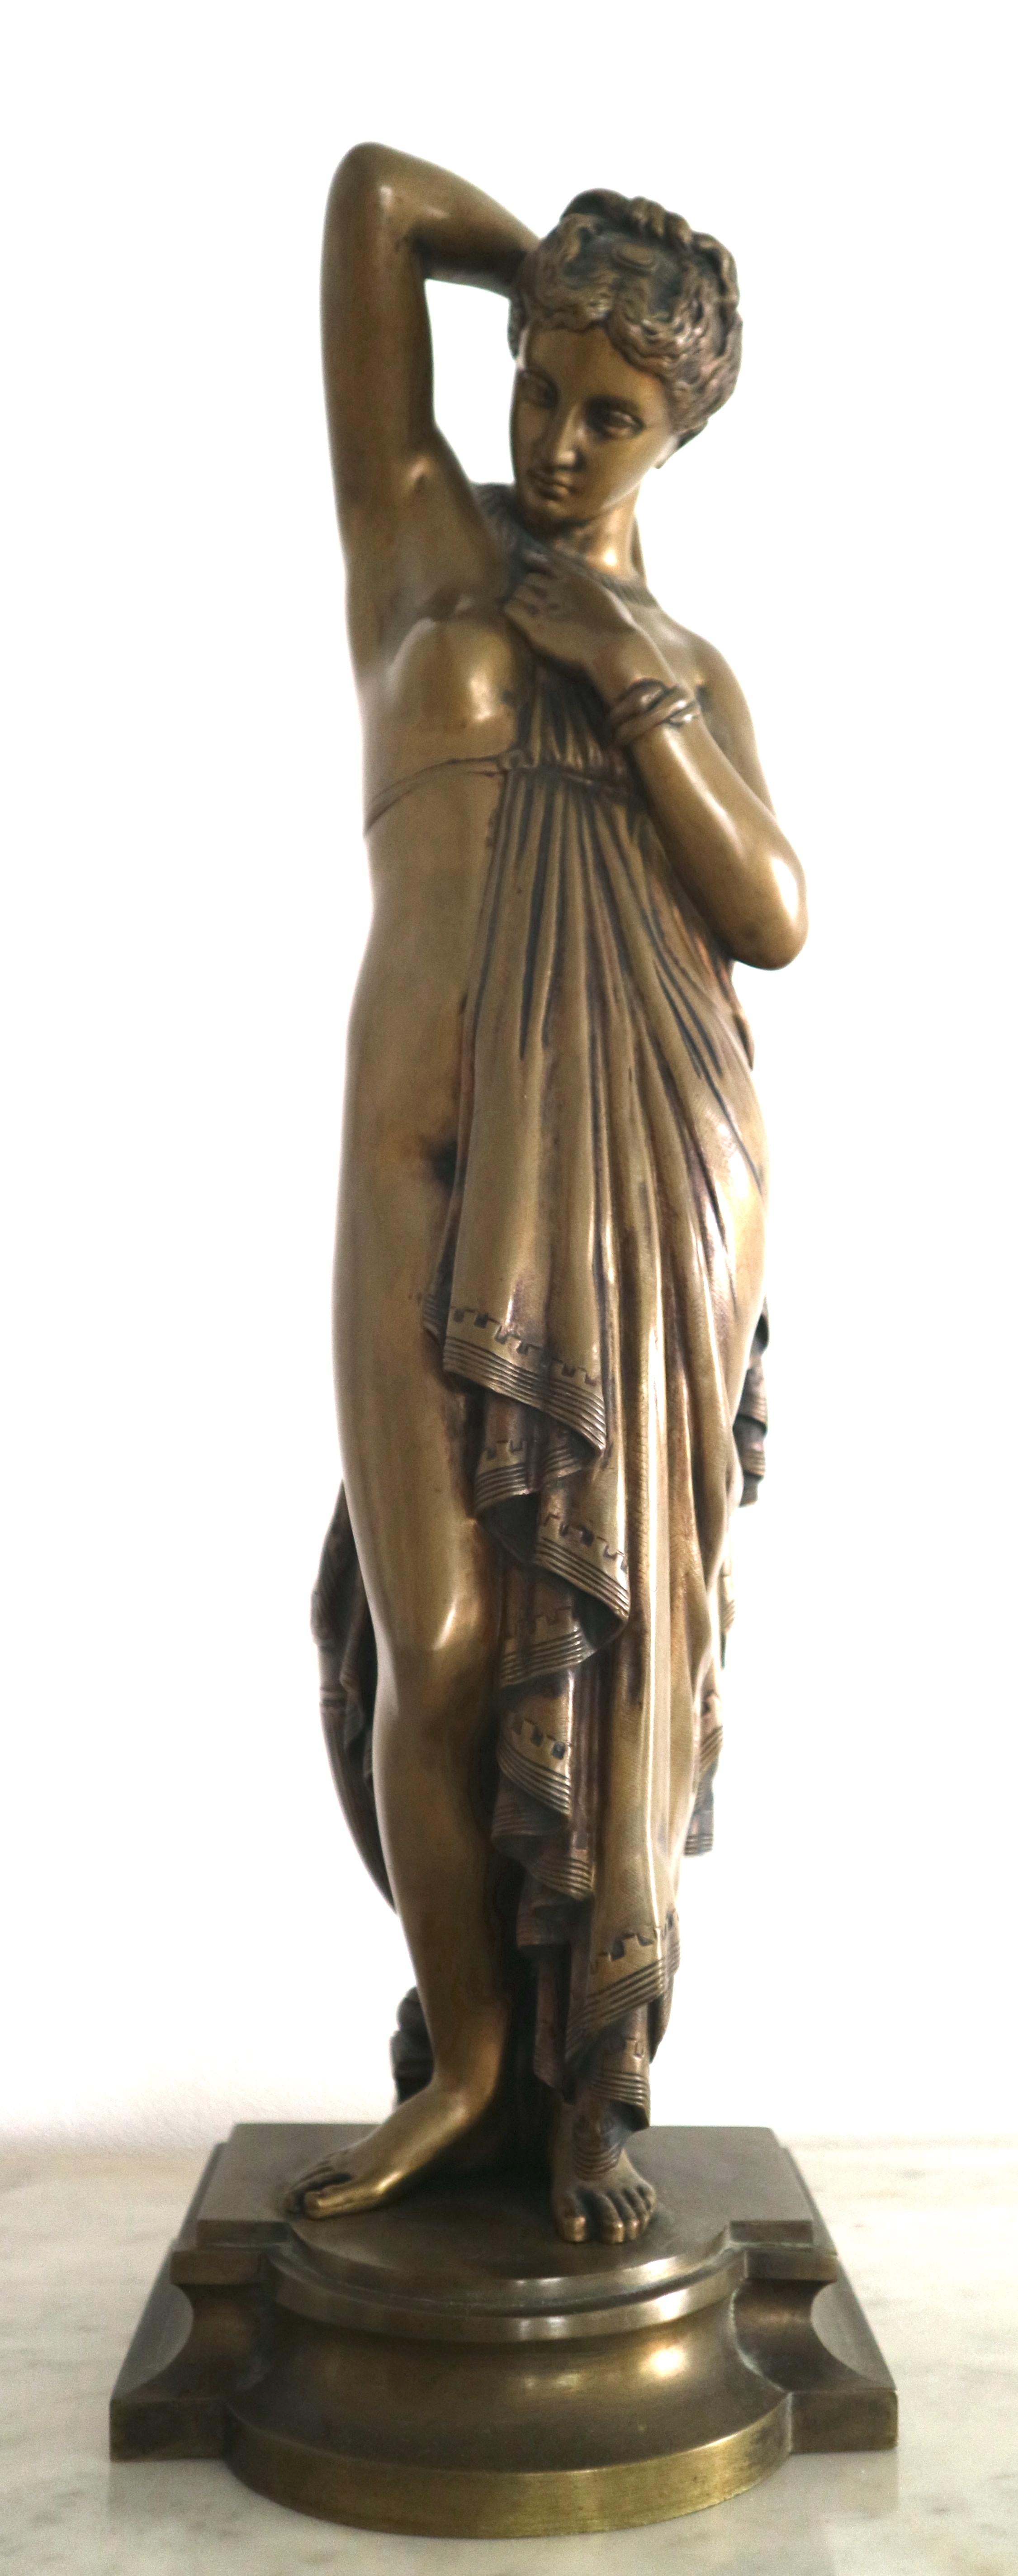 phryne aphrodite statue